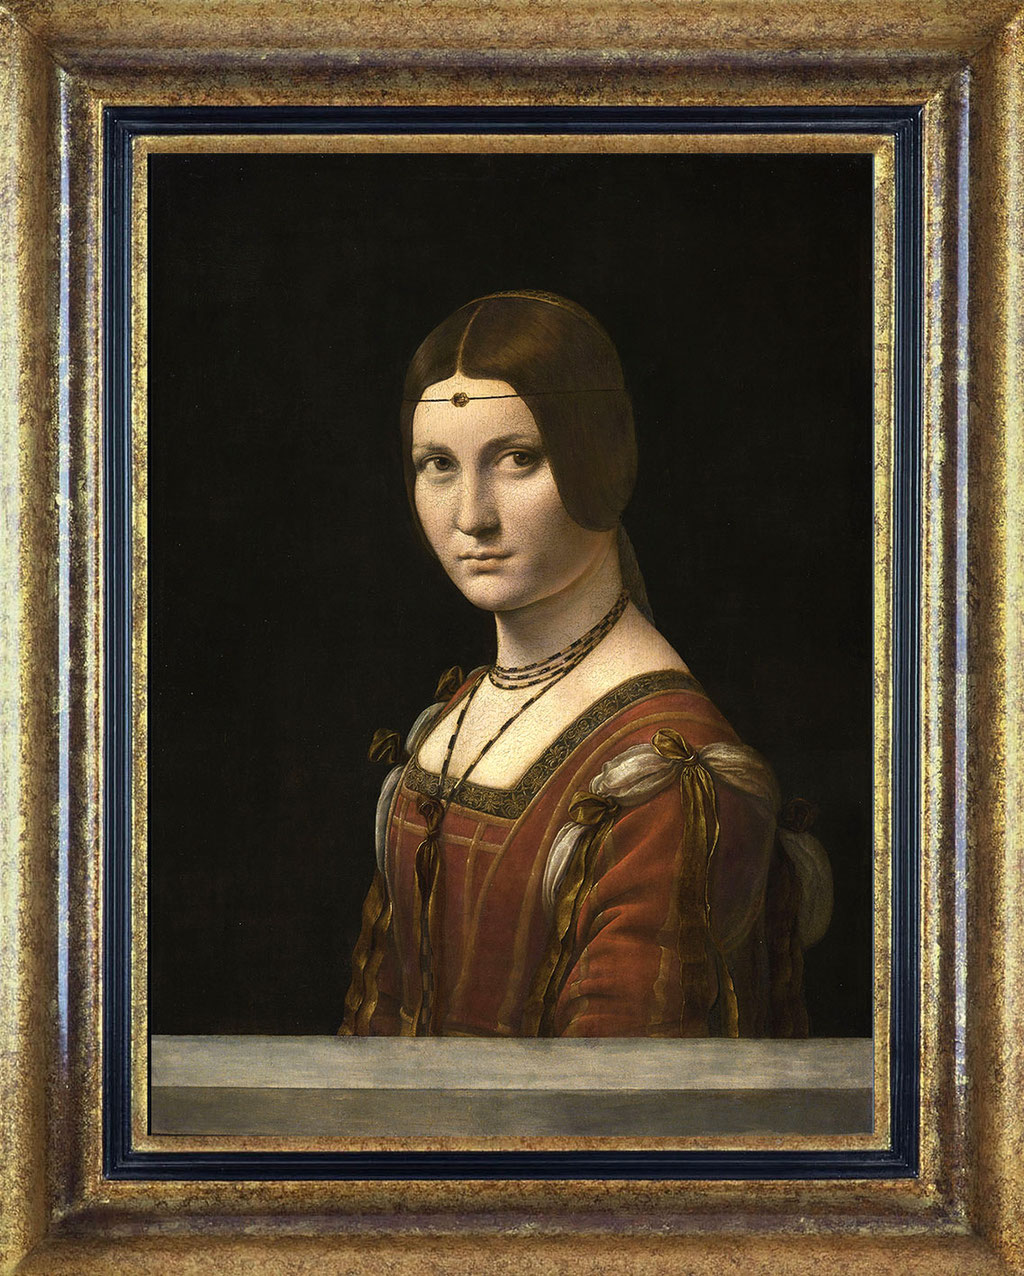 Lépnard de Vinci, la belle férronnière